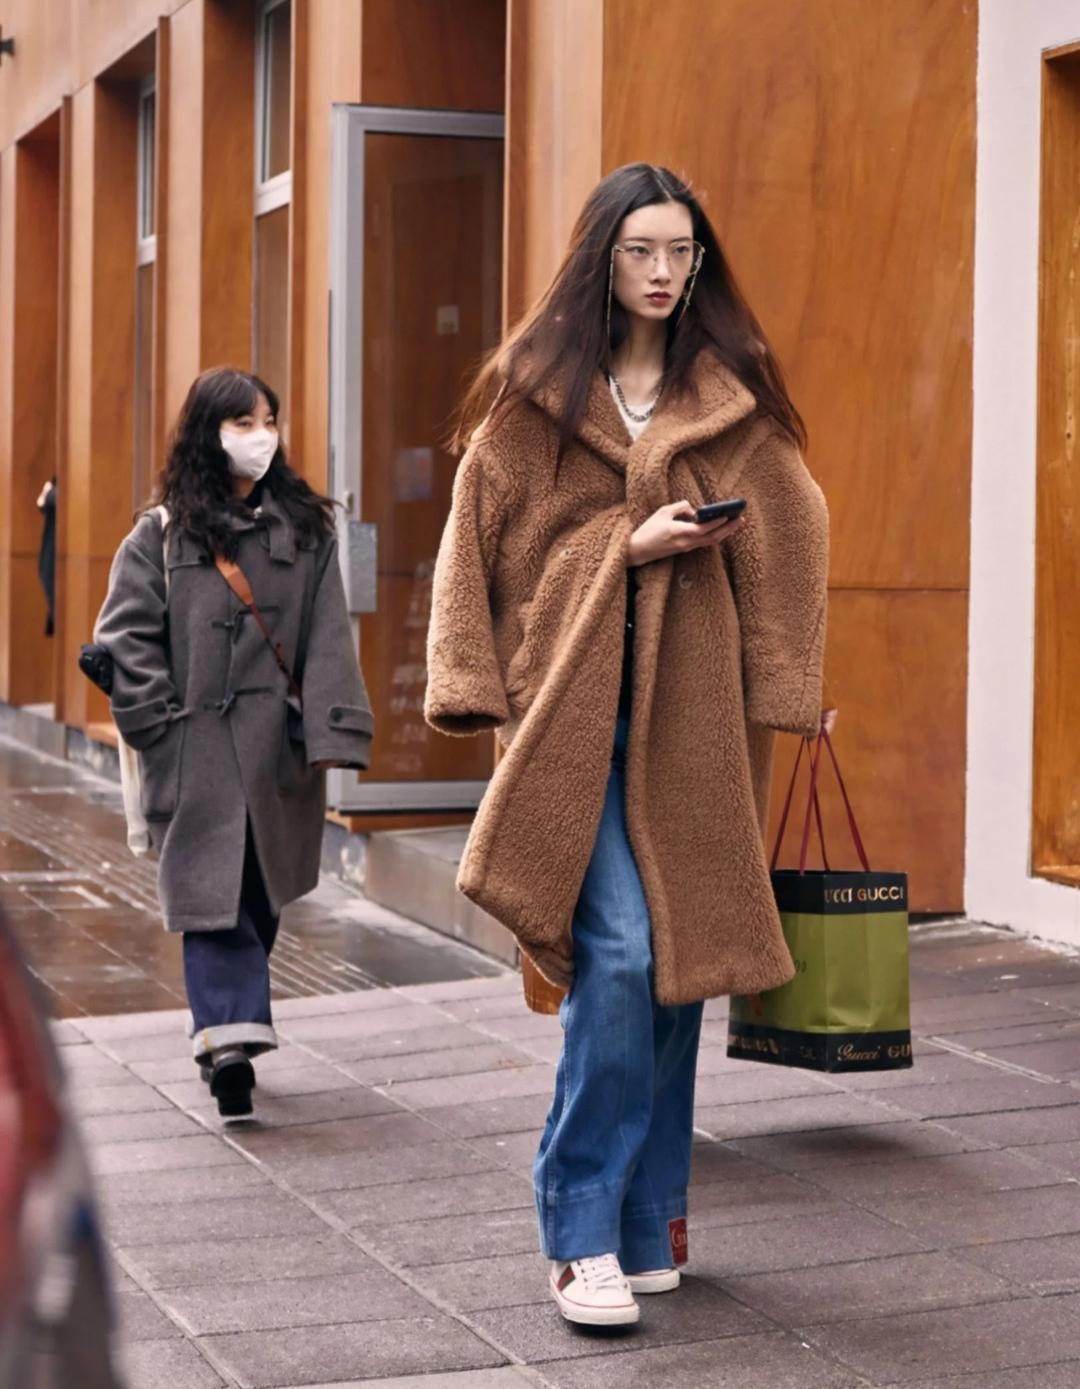 上海的女人都这么贵气吗？穿加绒的外套温柔还大方，特别的时髦